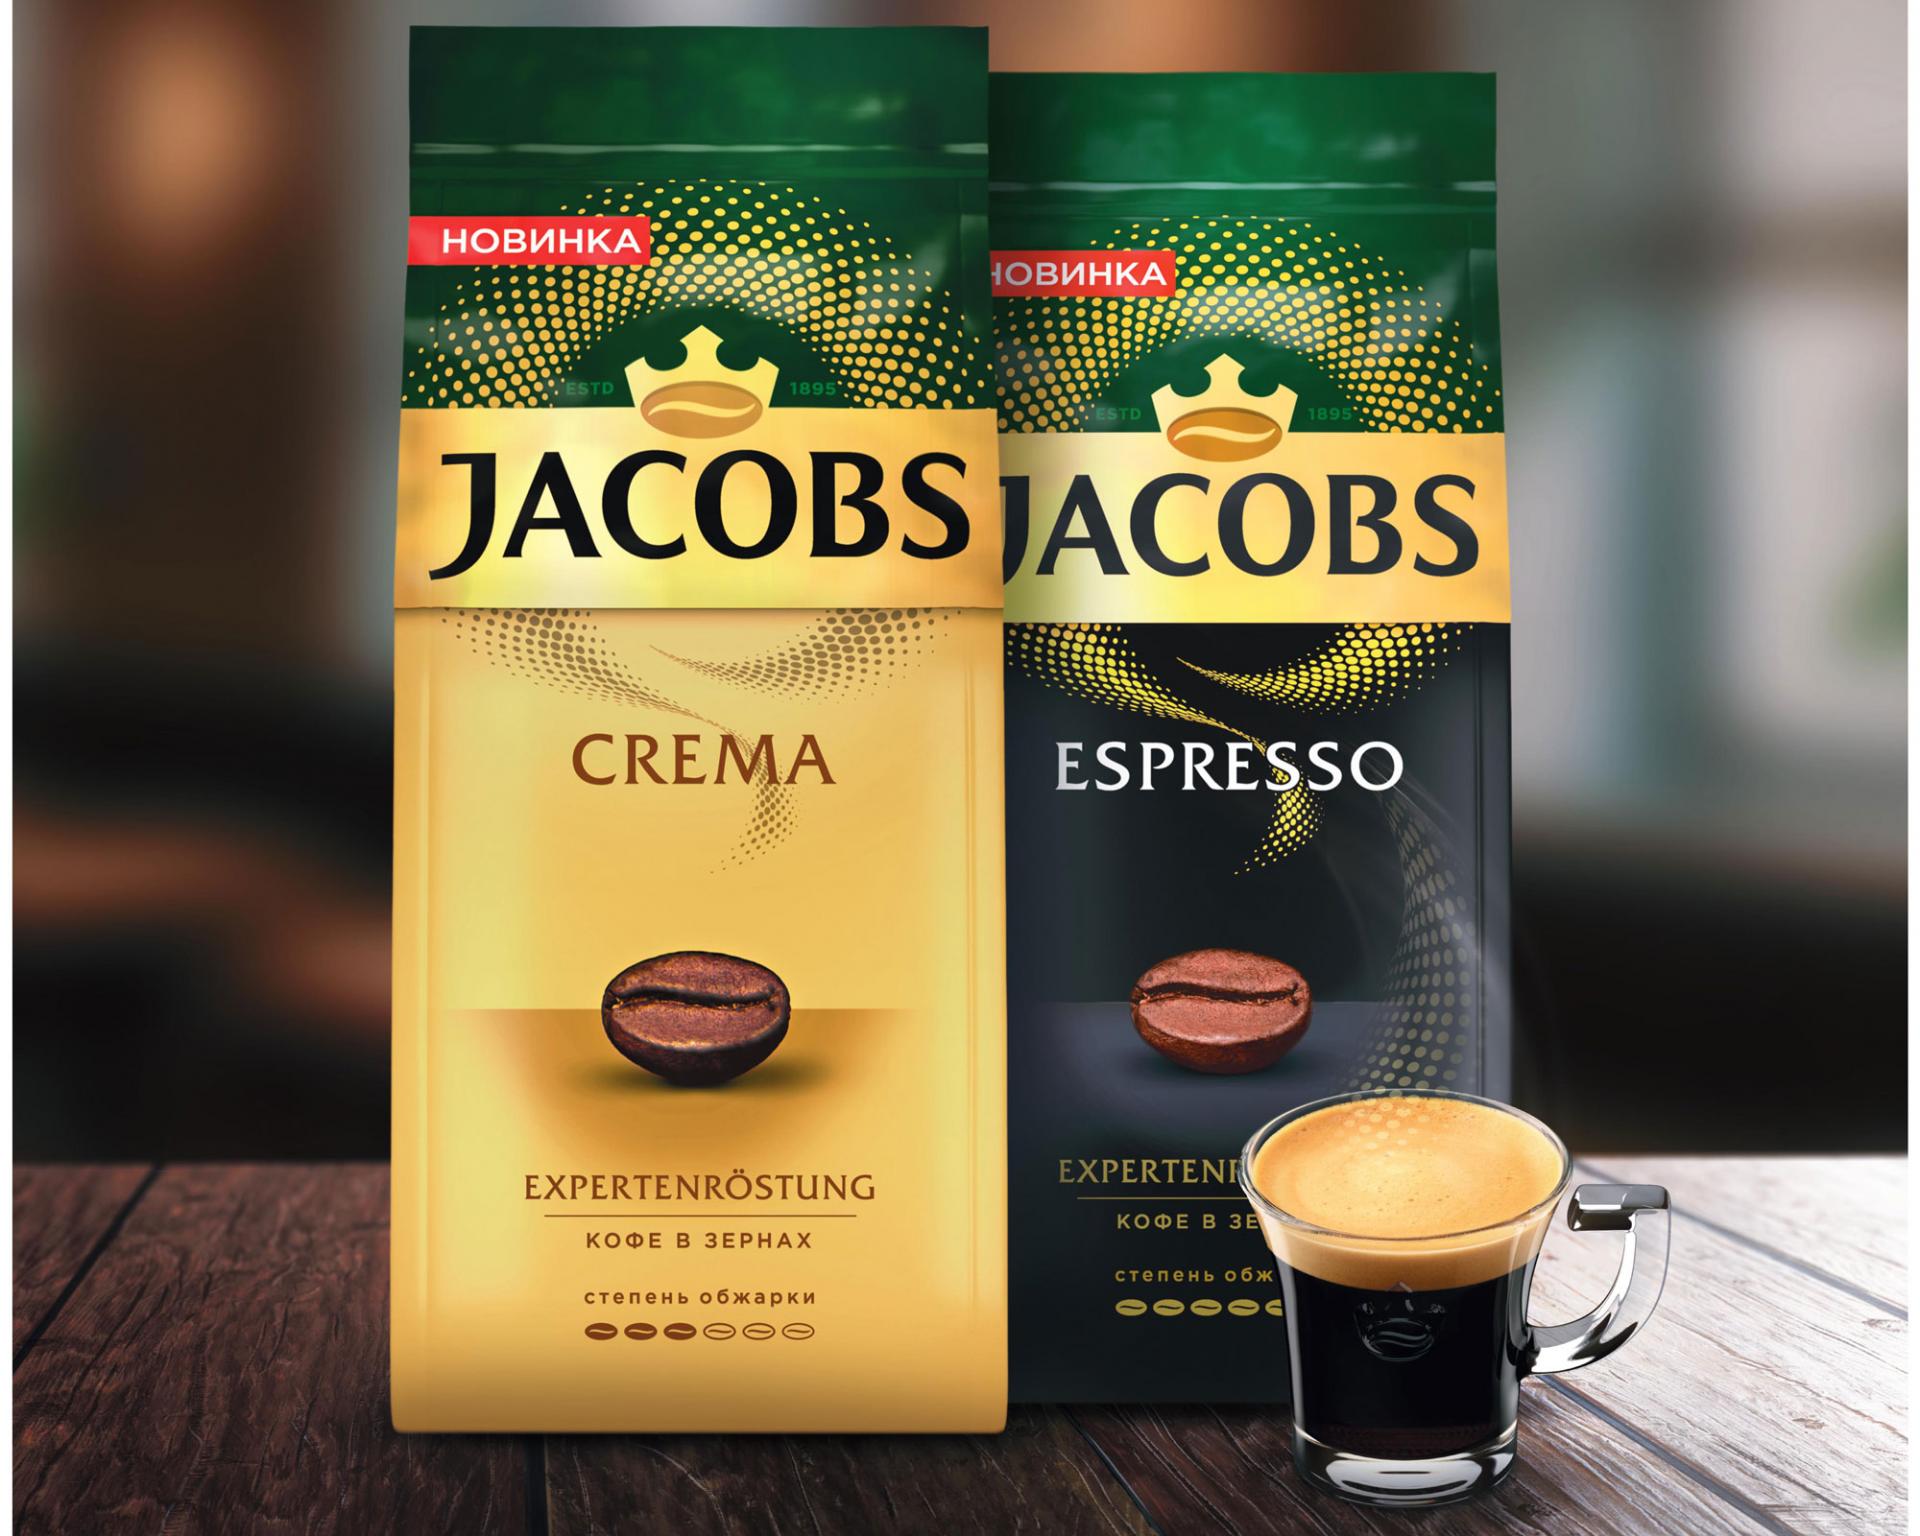 Профессионализм в каждом движении бариста: Jacobs представила новую линейку кофе